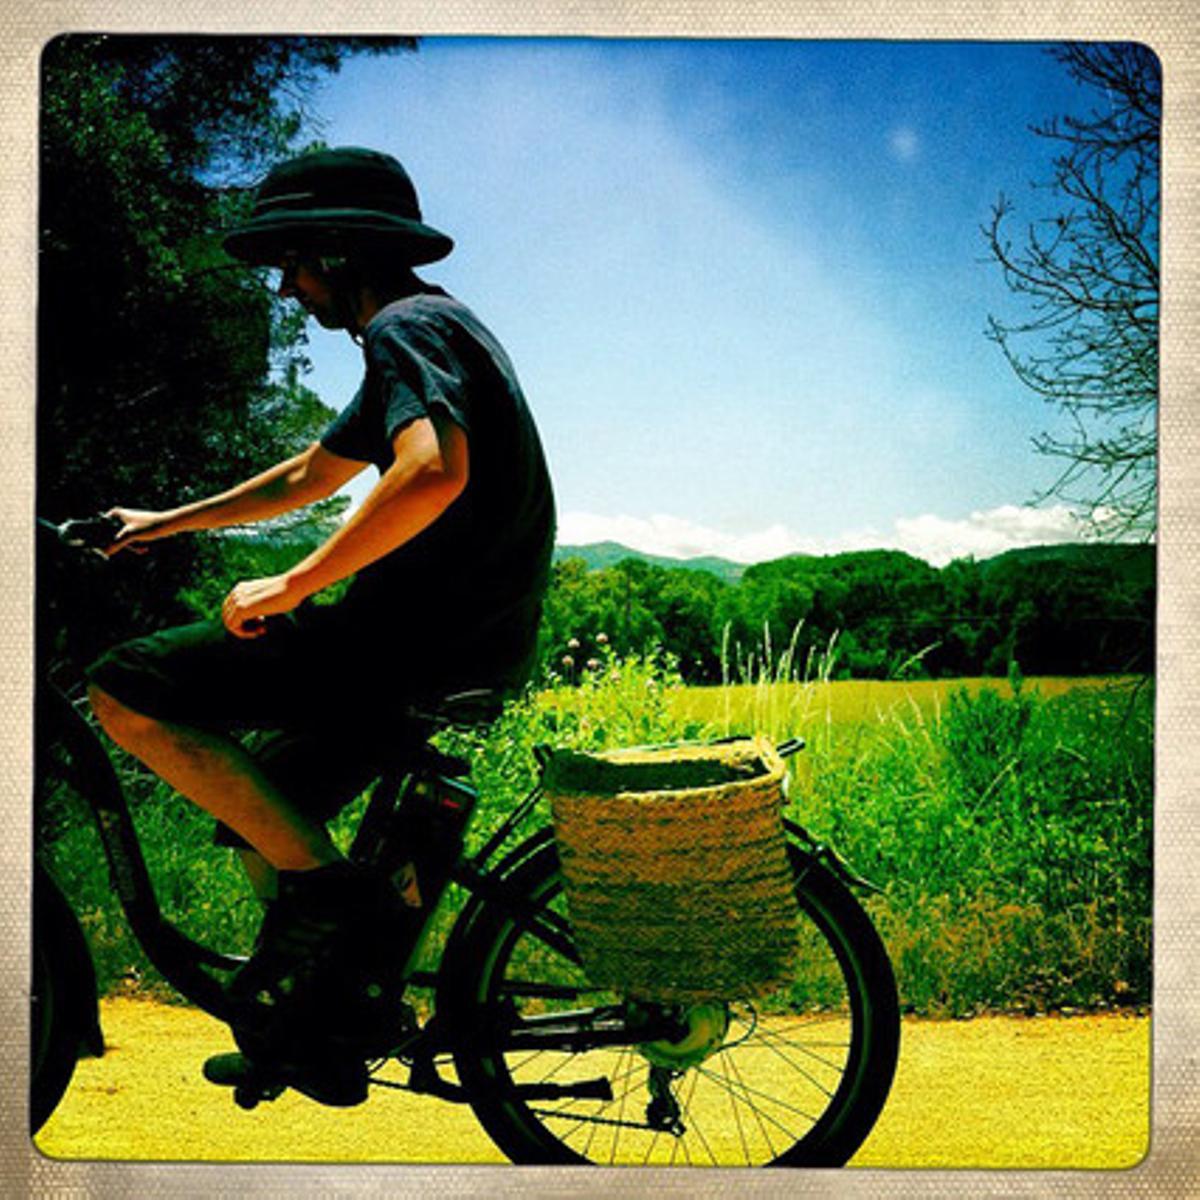 En bici de Cassà de la Selva a s’Agaró, de Philippe González, que té compte a Instagram des del novembre del 2010 i té 82.000 seguidors.